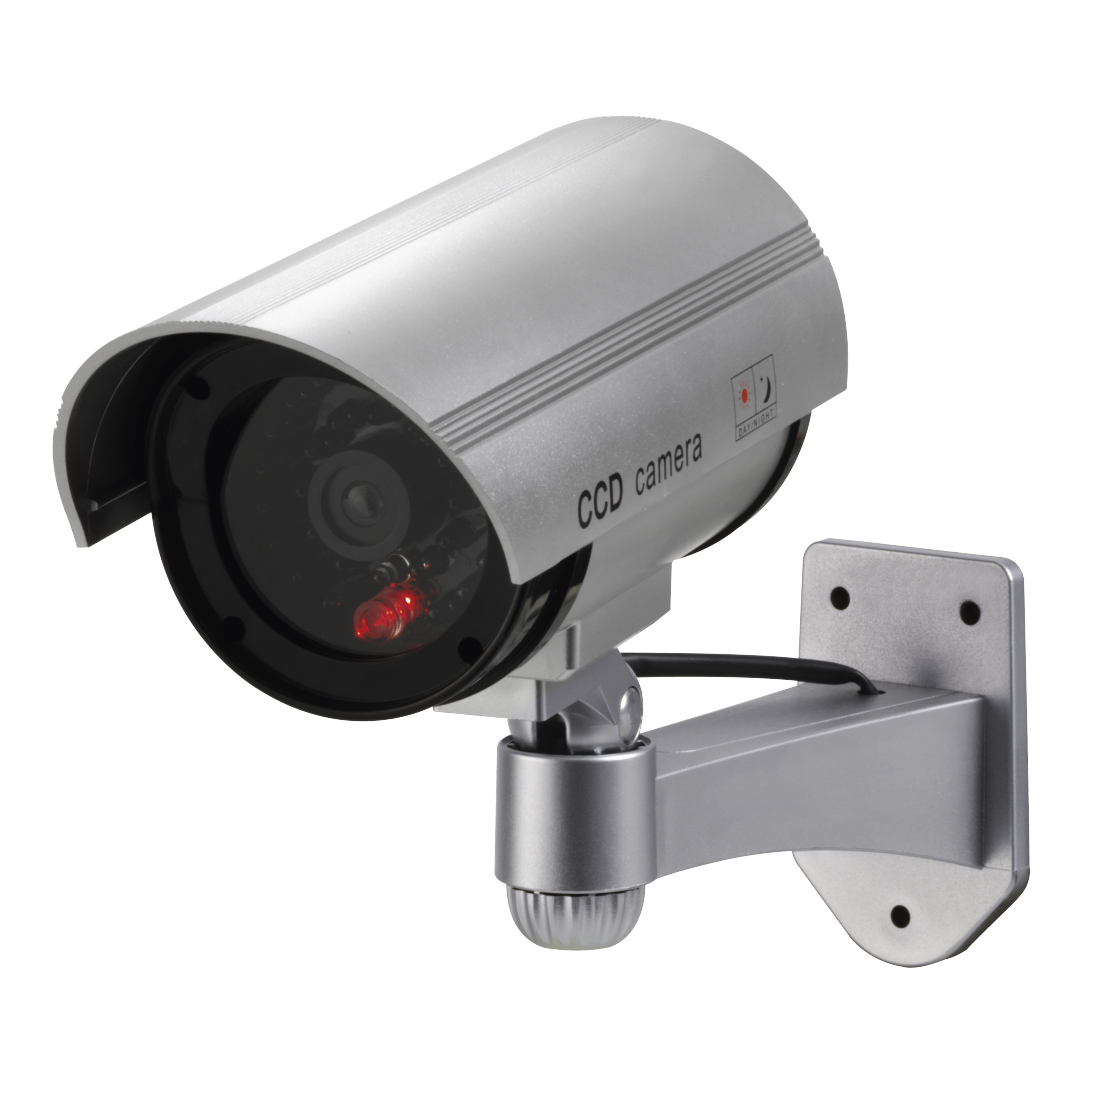 Видеокамера для дома с датчиком движения. CCD Camera муляж. Муляж видеокамеры с датчиком движения. Муляж видеокамеры белая. Датчик видеонаблюдения размер.